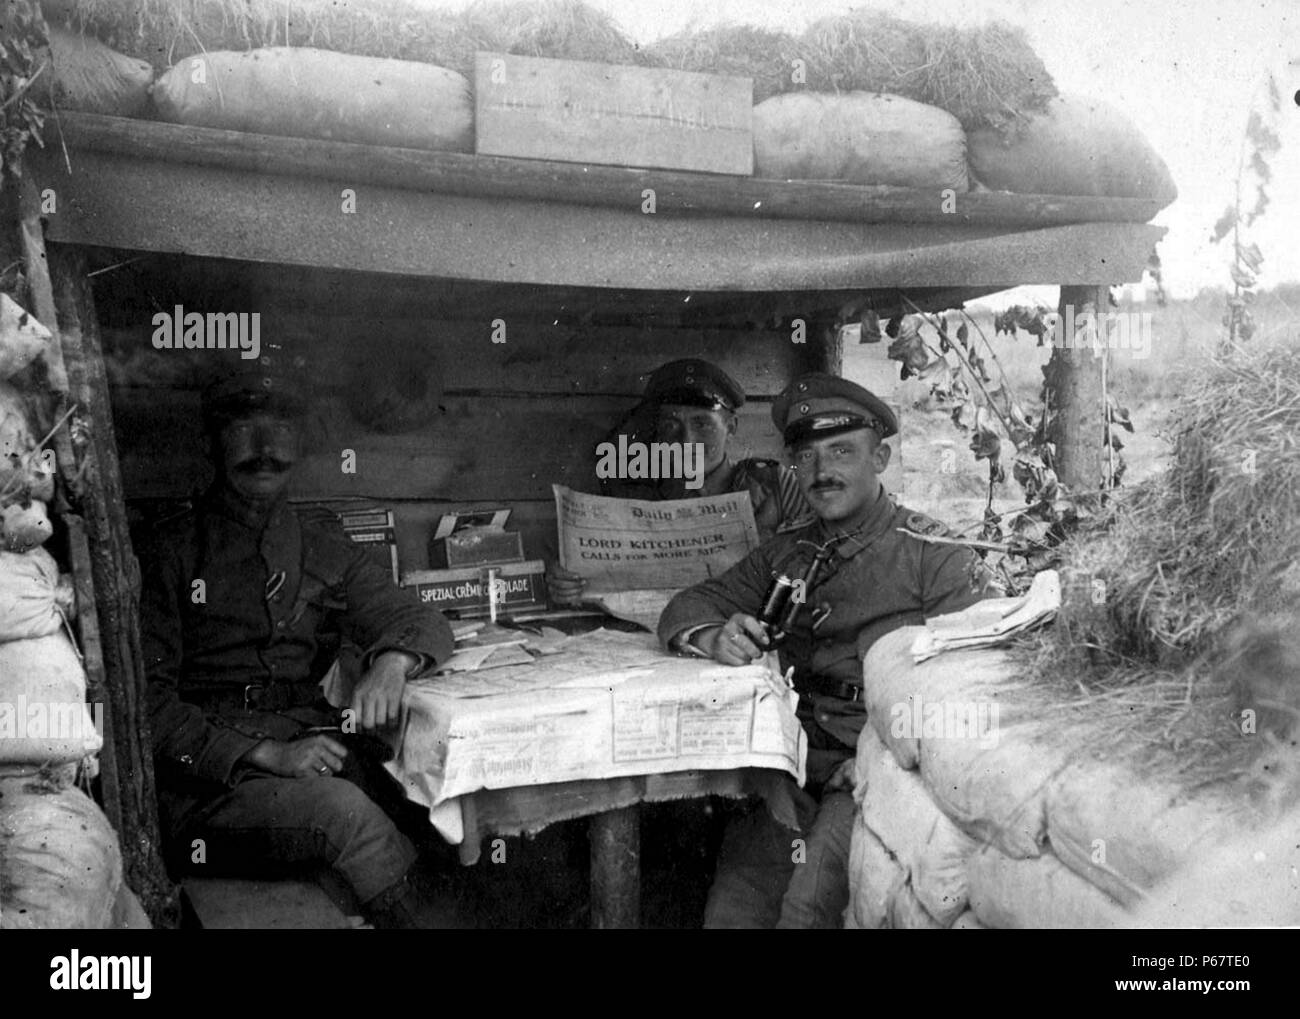 Photographie de soldats allemands dans une tranchée près de Wiltje. L'un est la manière d'aborder une question du Daily Mail de rapports sur Lord Kitchener's call for more British recrues. Datée 1915 Banque D'Images